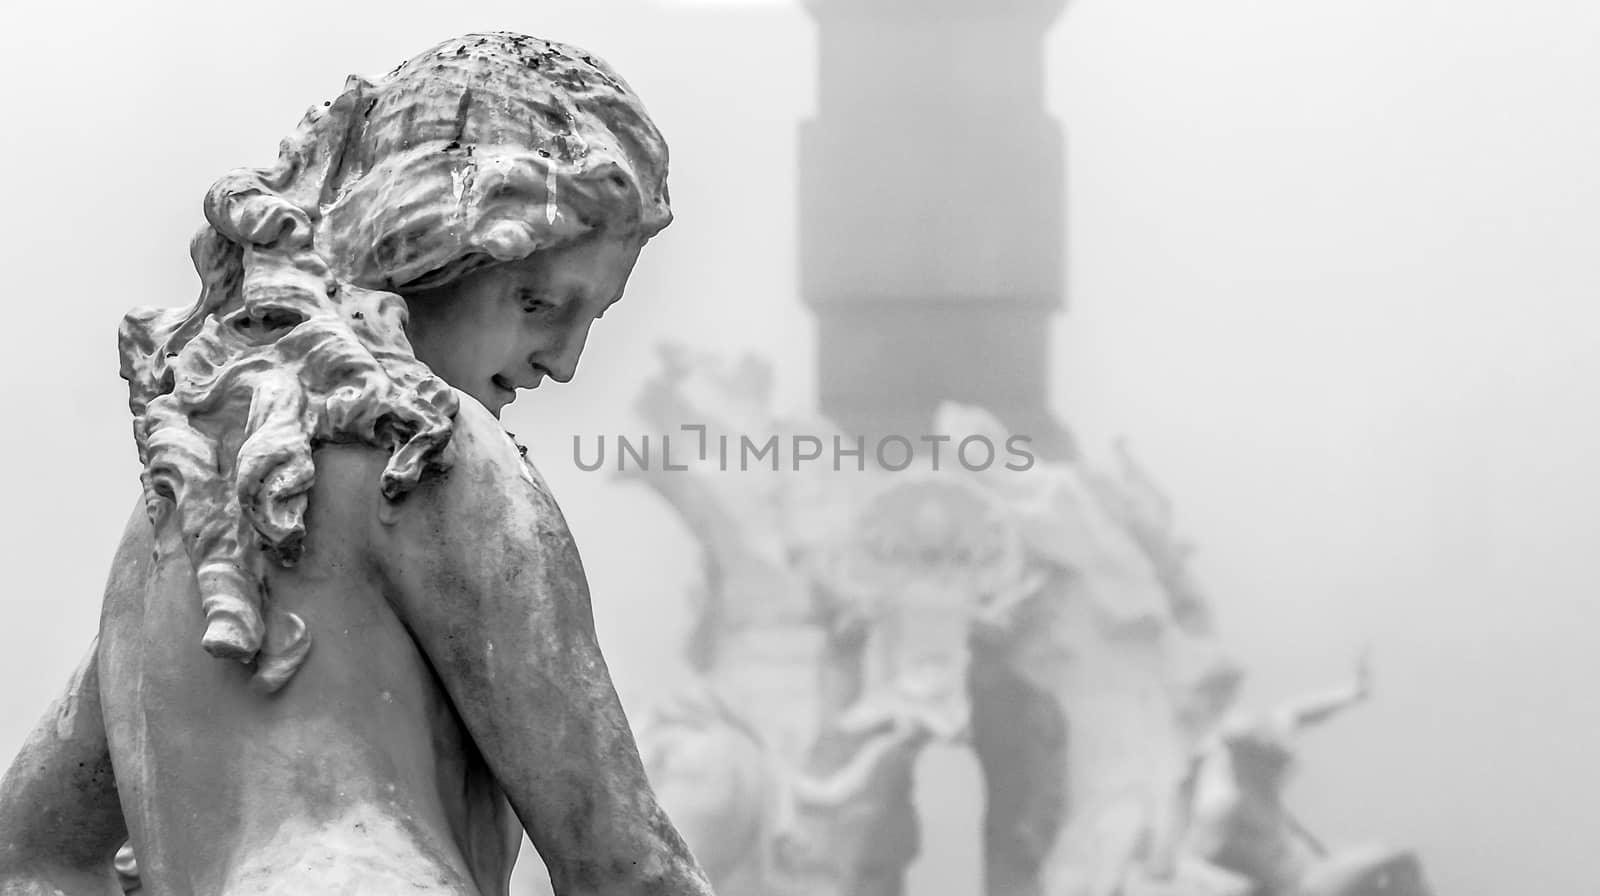 marble statue in Rome by rarrarorro